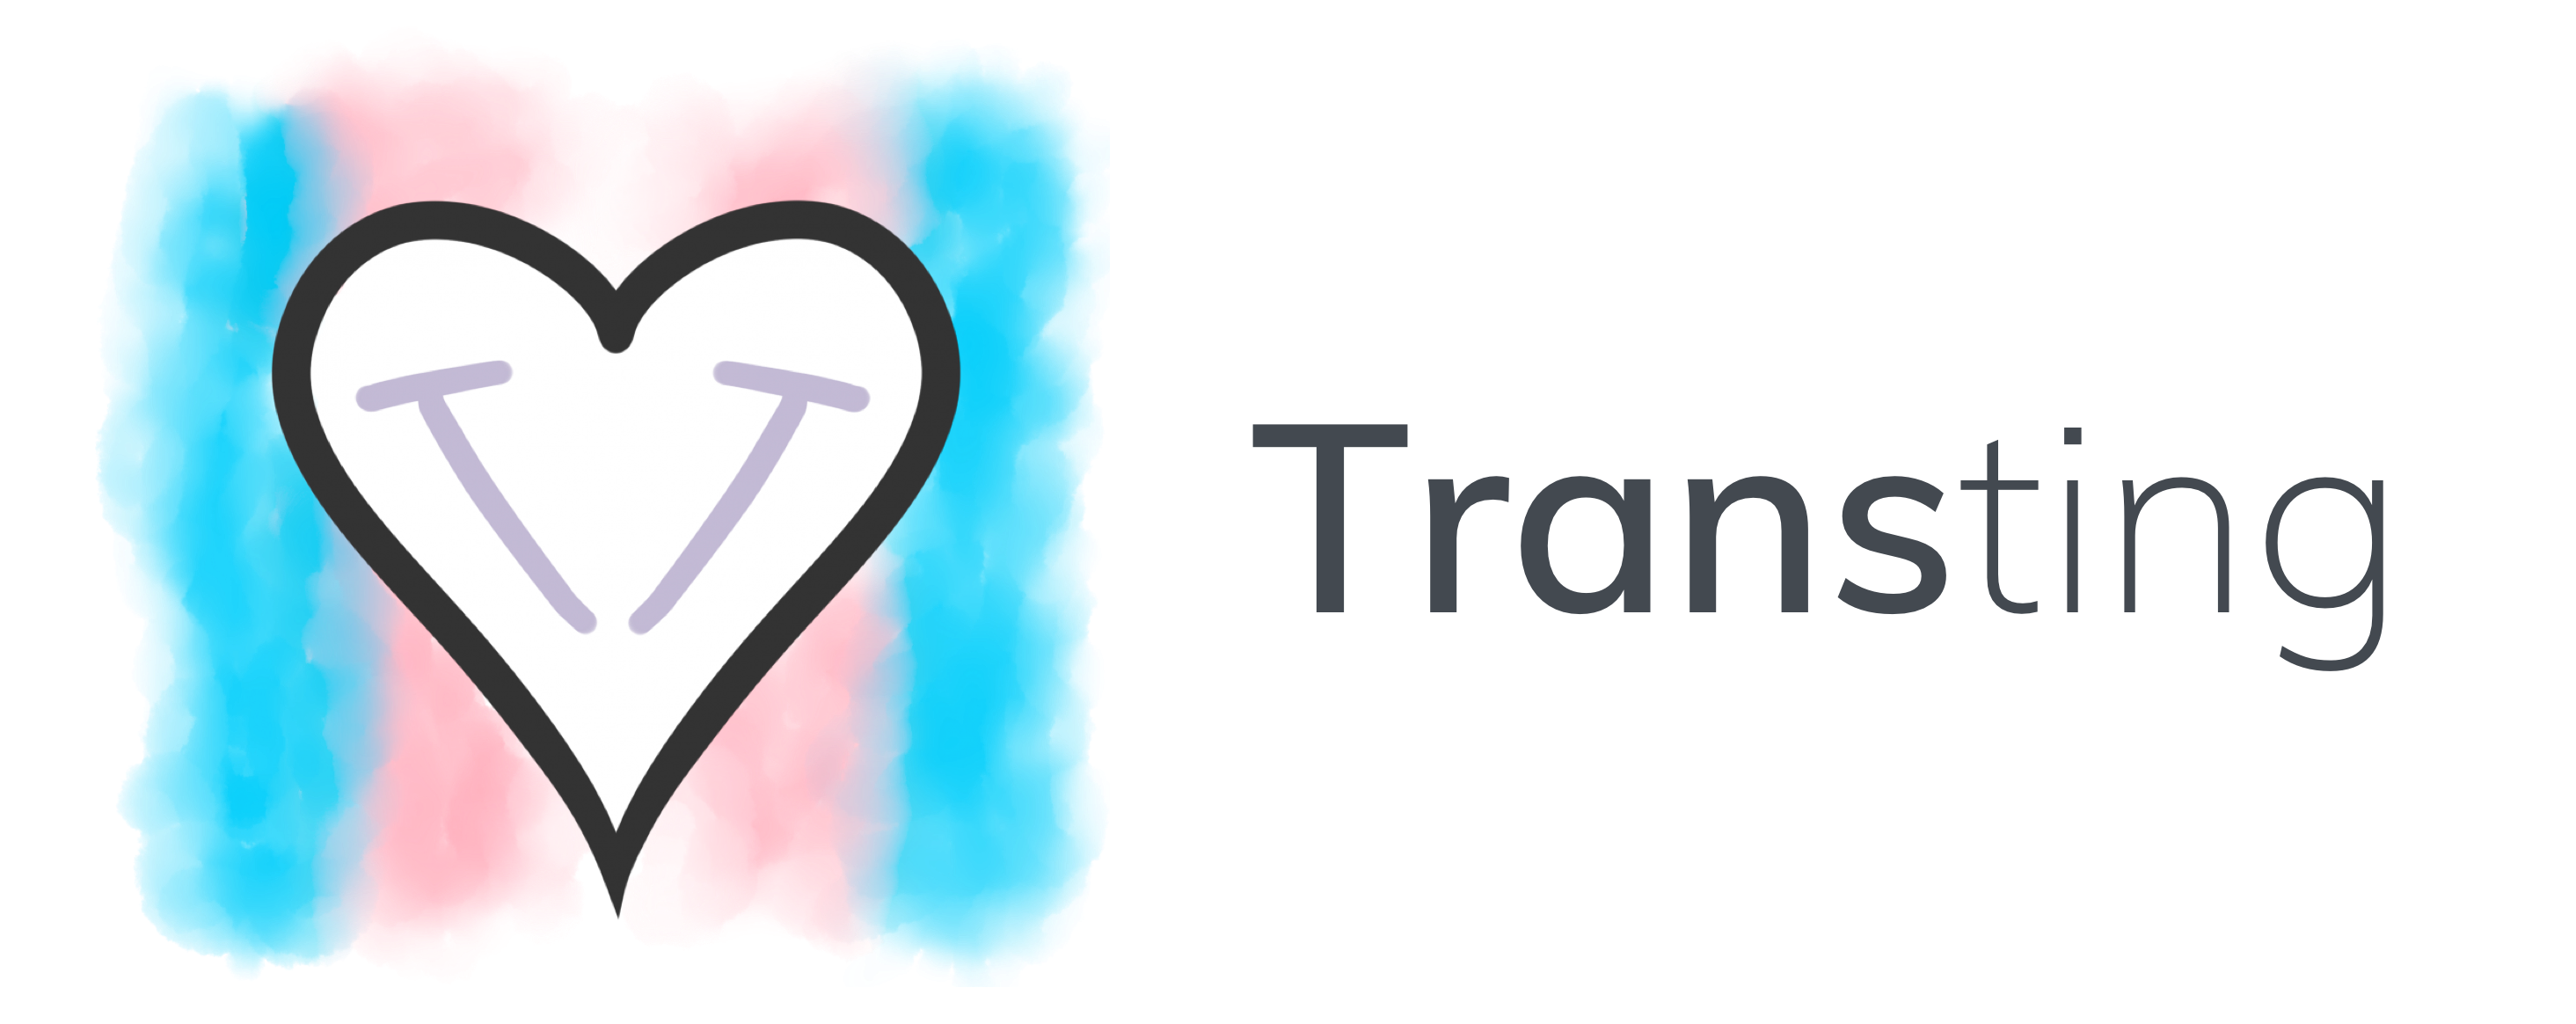 Transting.dk logo